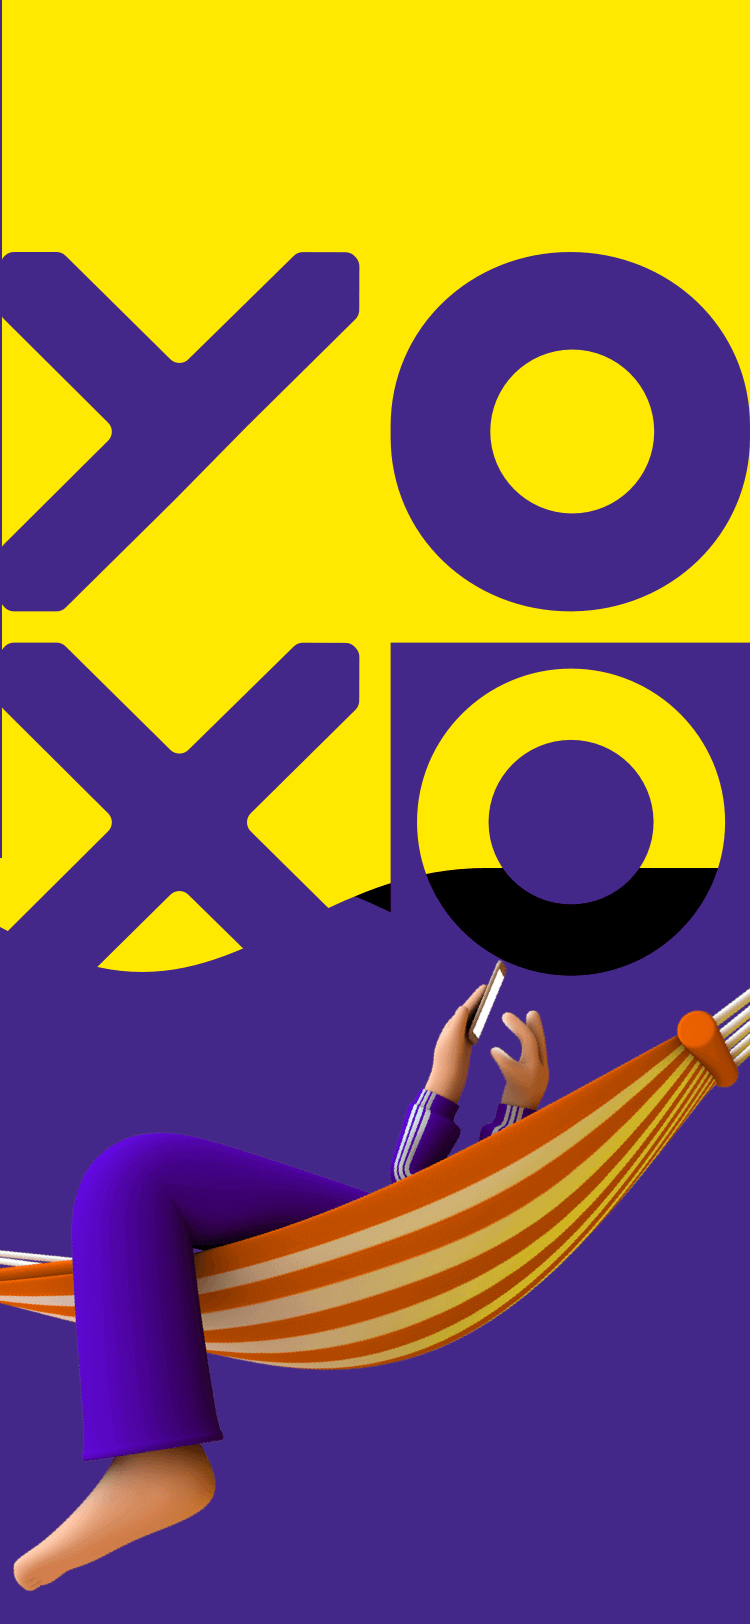 YOXO Configurator